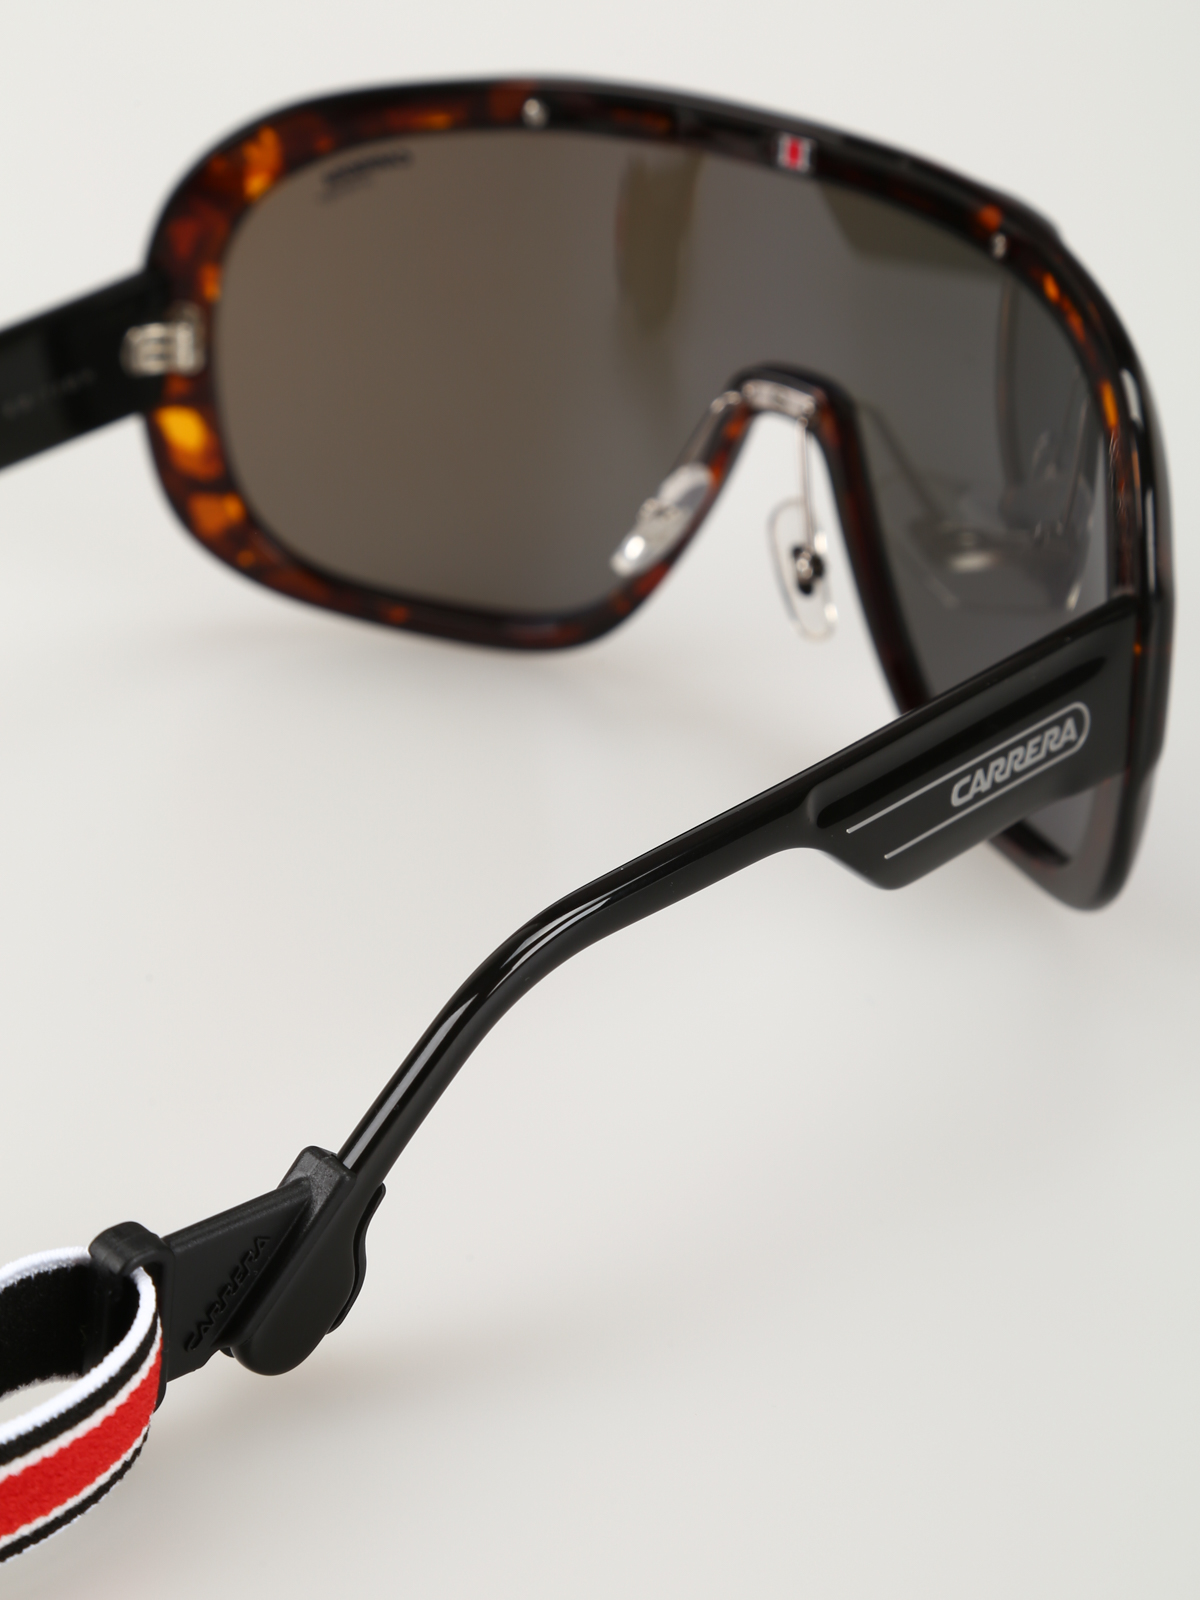 Sunglasses Carrera - Epica Special Edition sunglasses - EPICA086W1